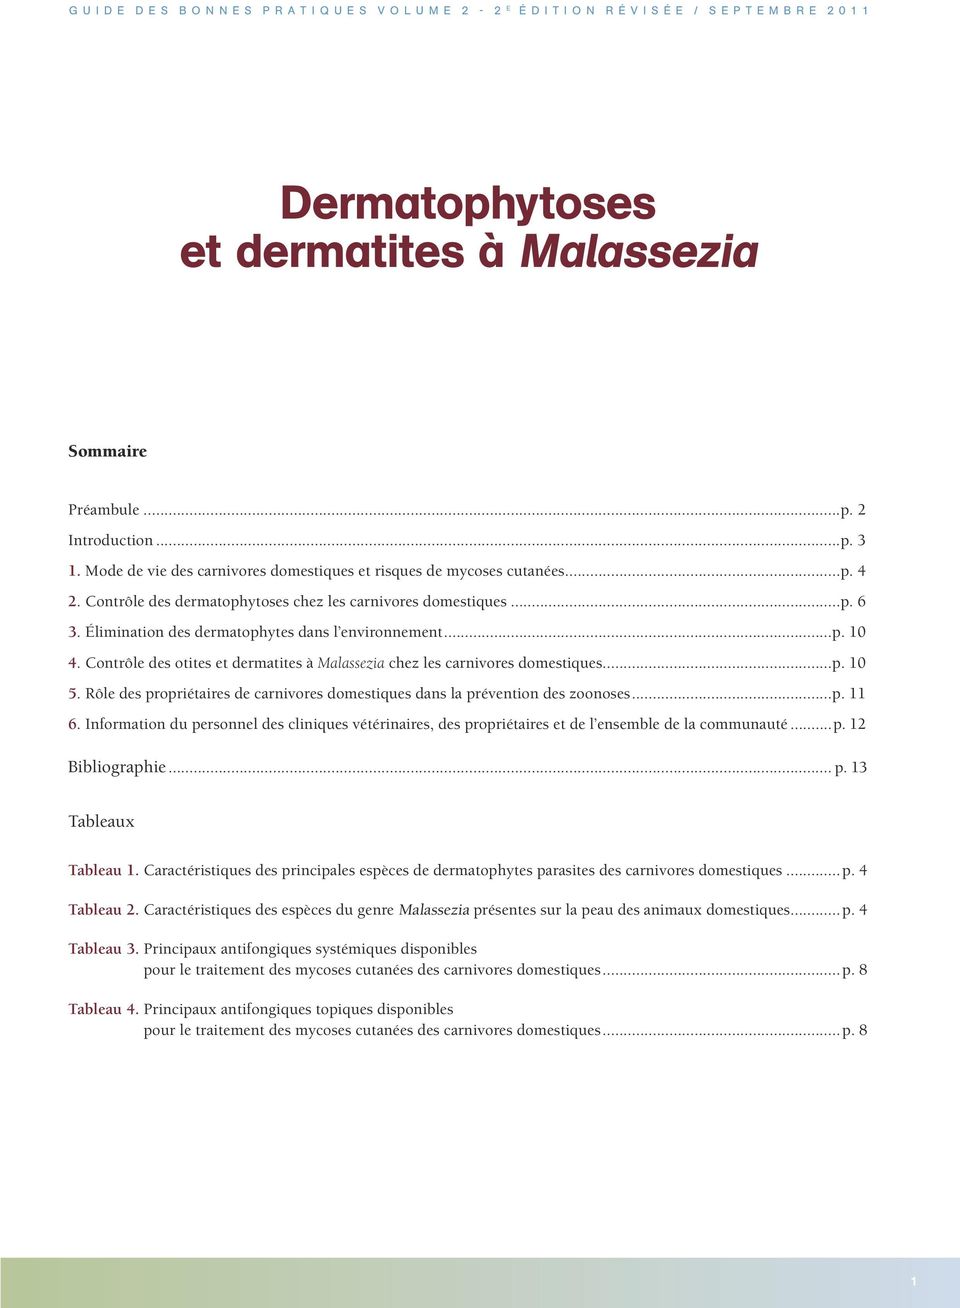 Contrôle des dermatophytoses chez les carnivores domestiques...p. 6 3. Élimination des dermatophytes dans l environnement...p. 10 4.